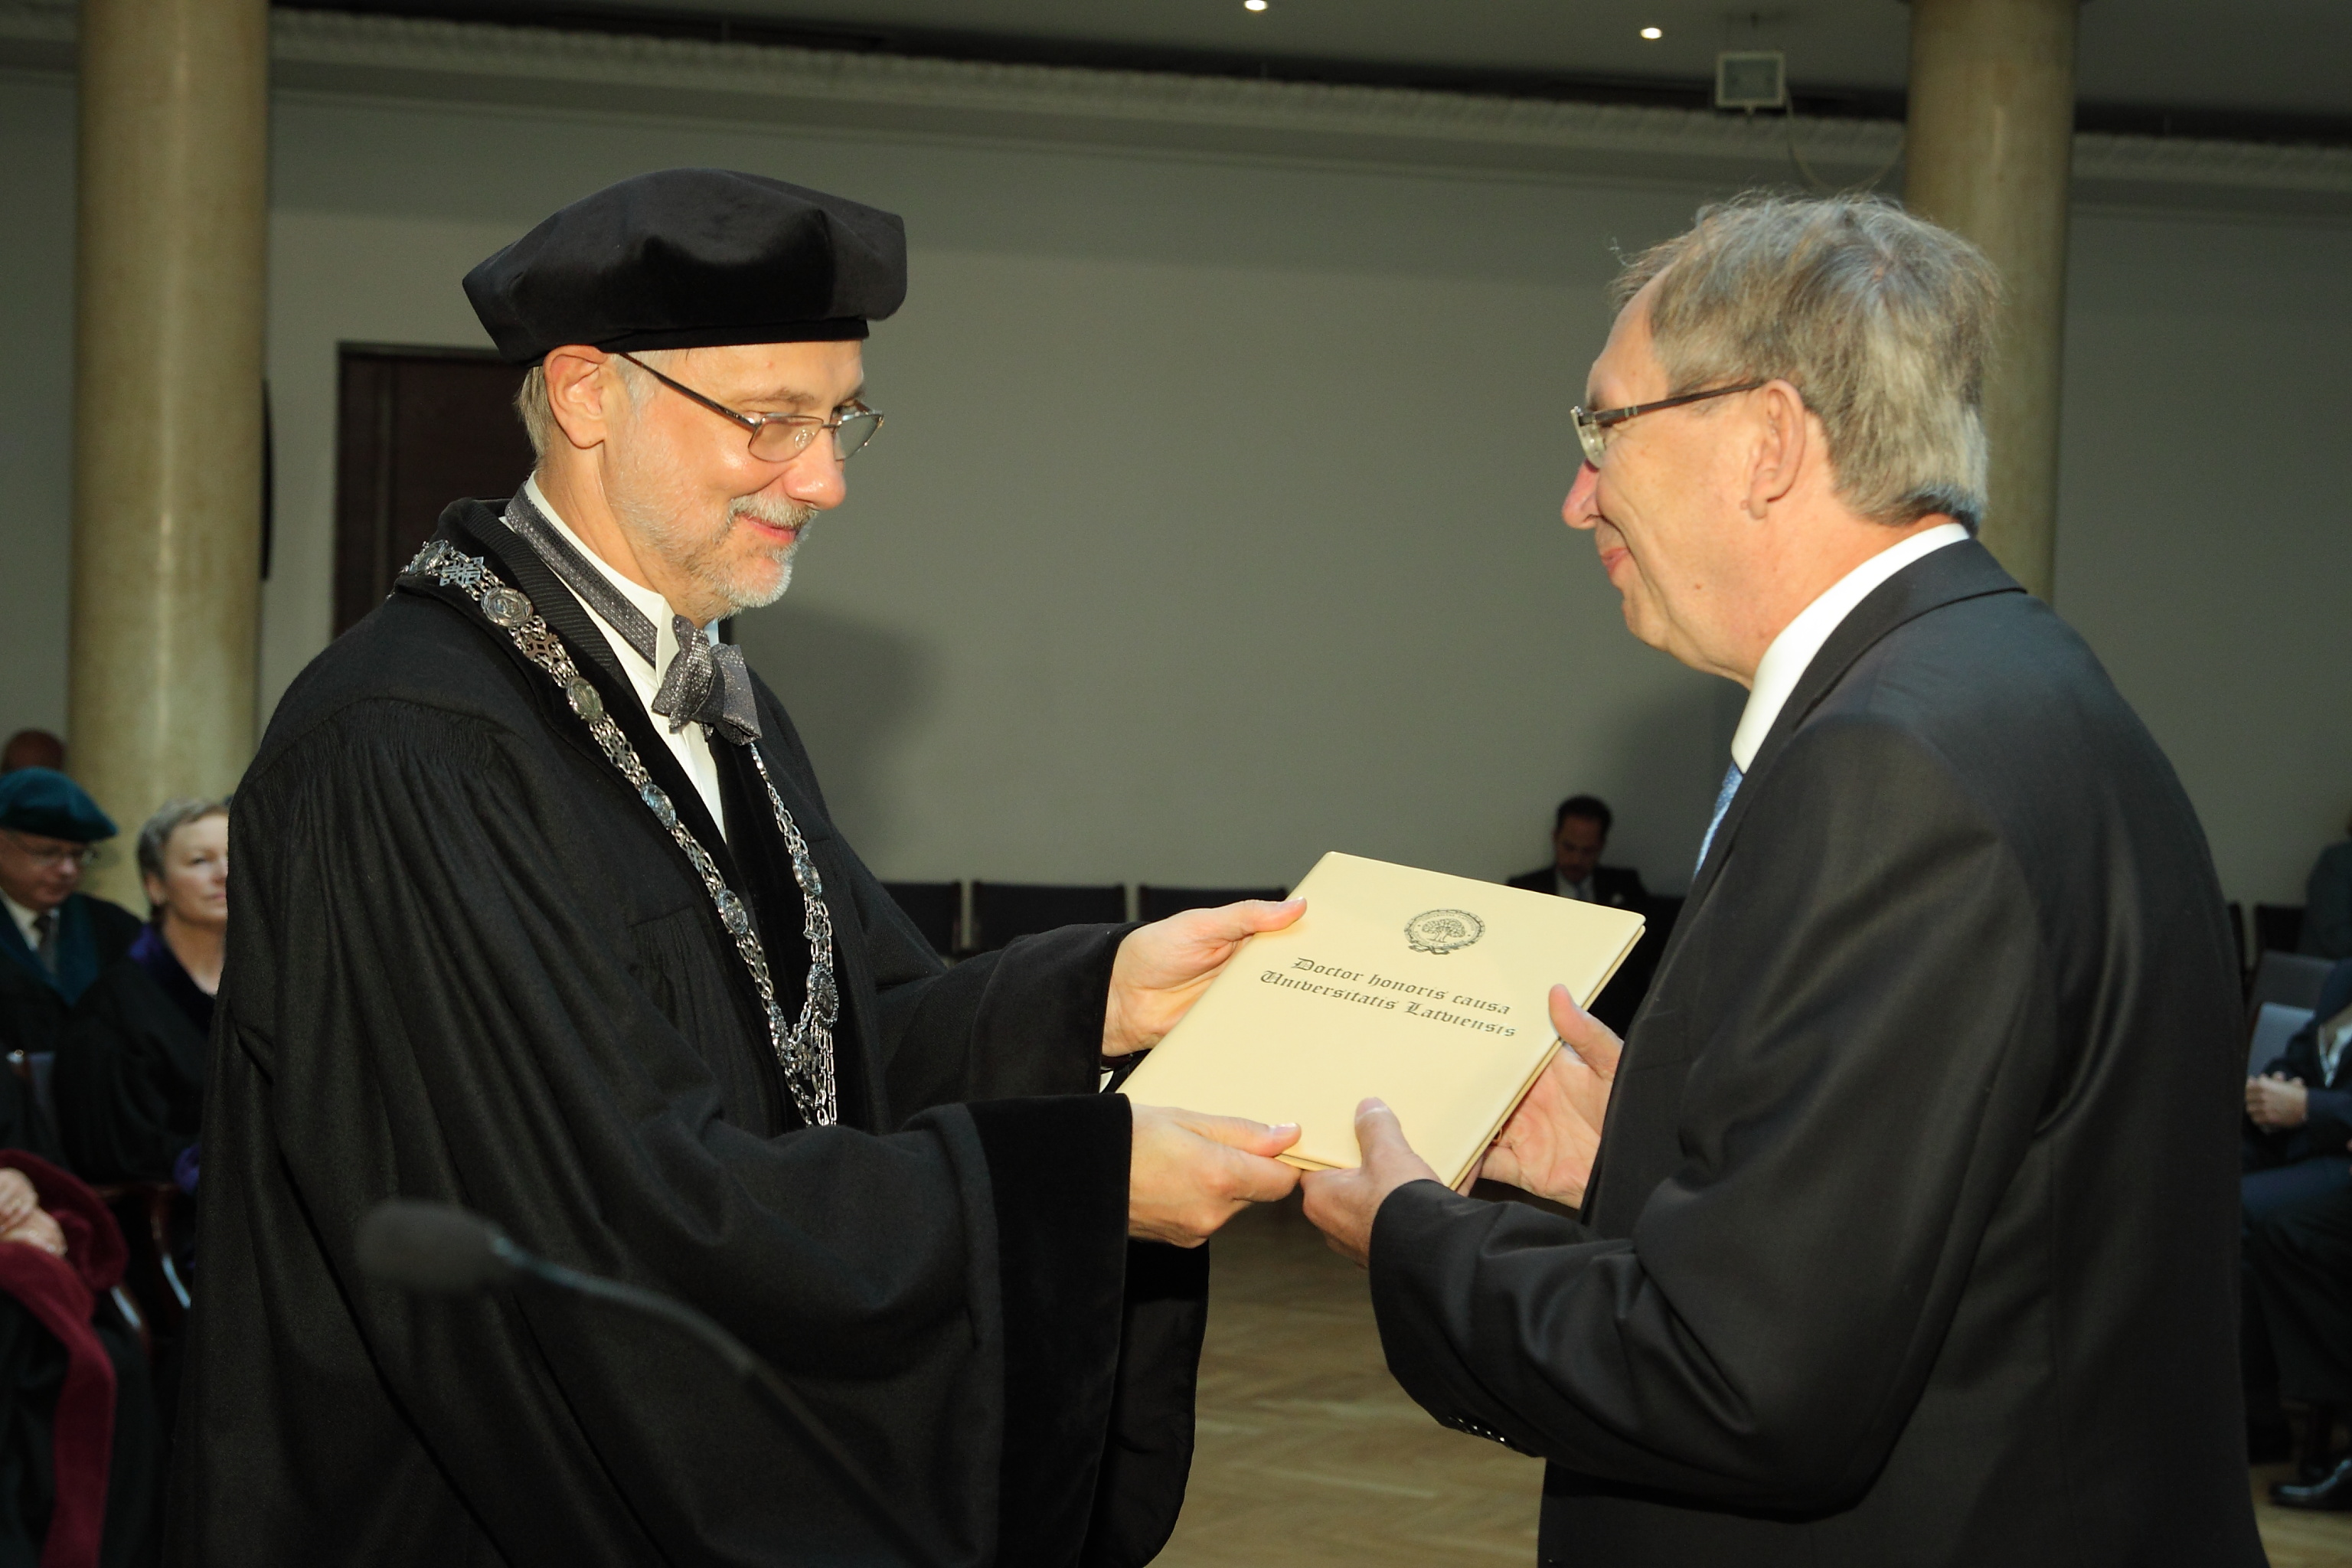 Doctor honoris causa of The University of Latvia No 225 Ahto Kalja